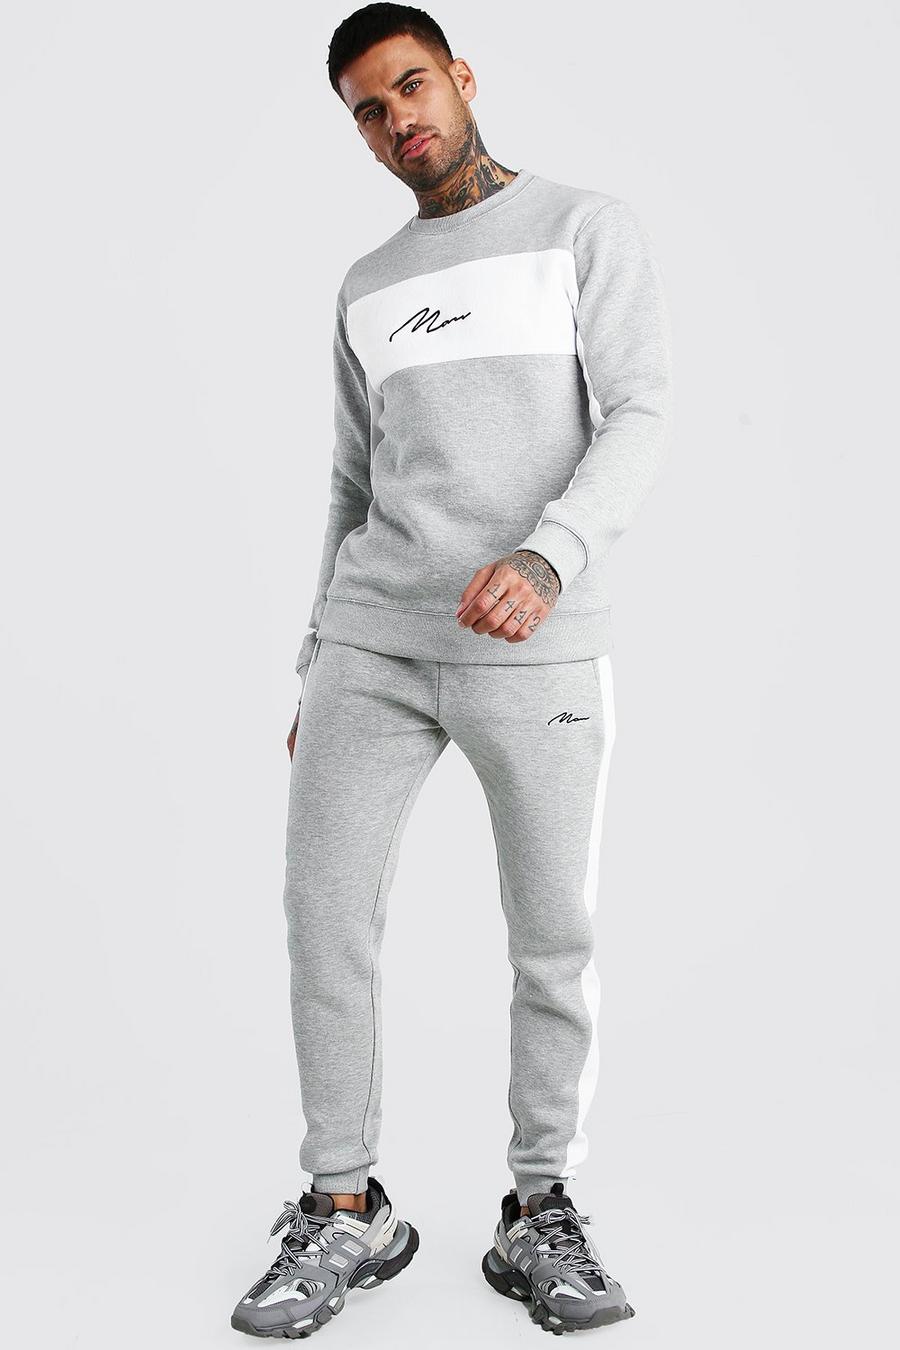 Colorblock-Trainingsanzug mit Pullover und MAN-Schriftzug, Grau meliert grey